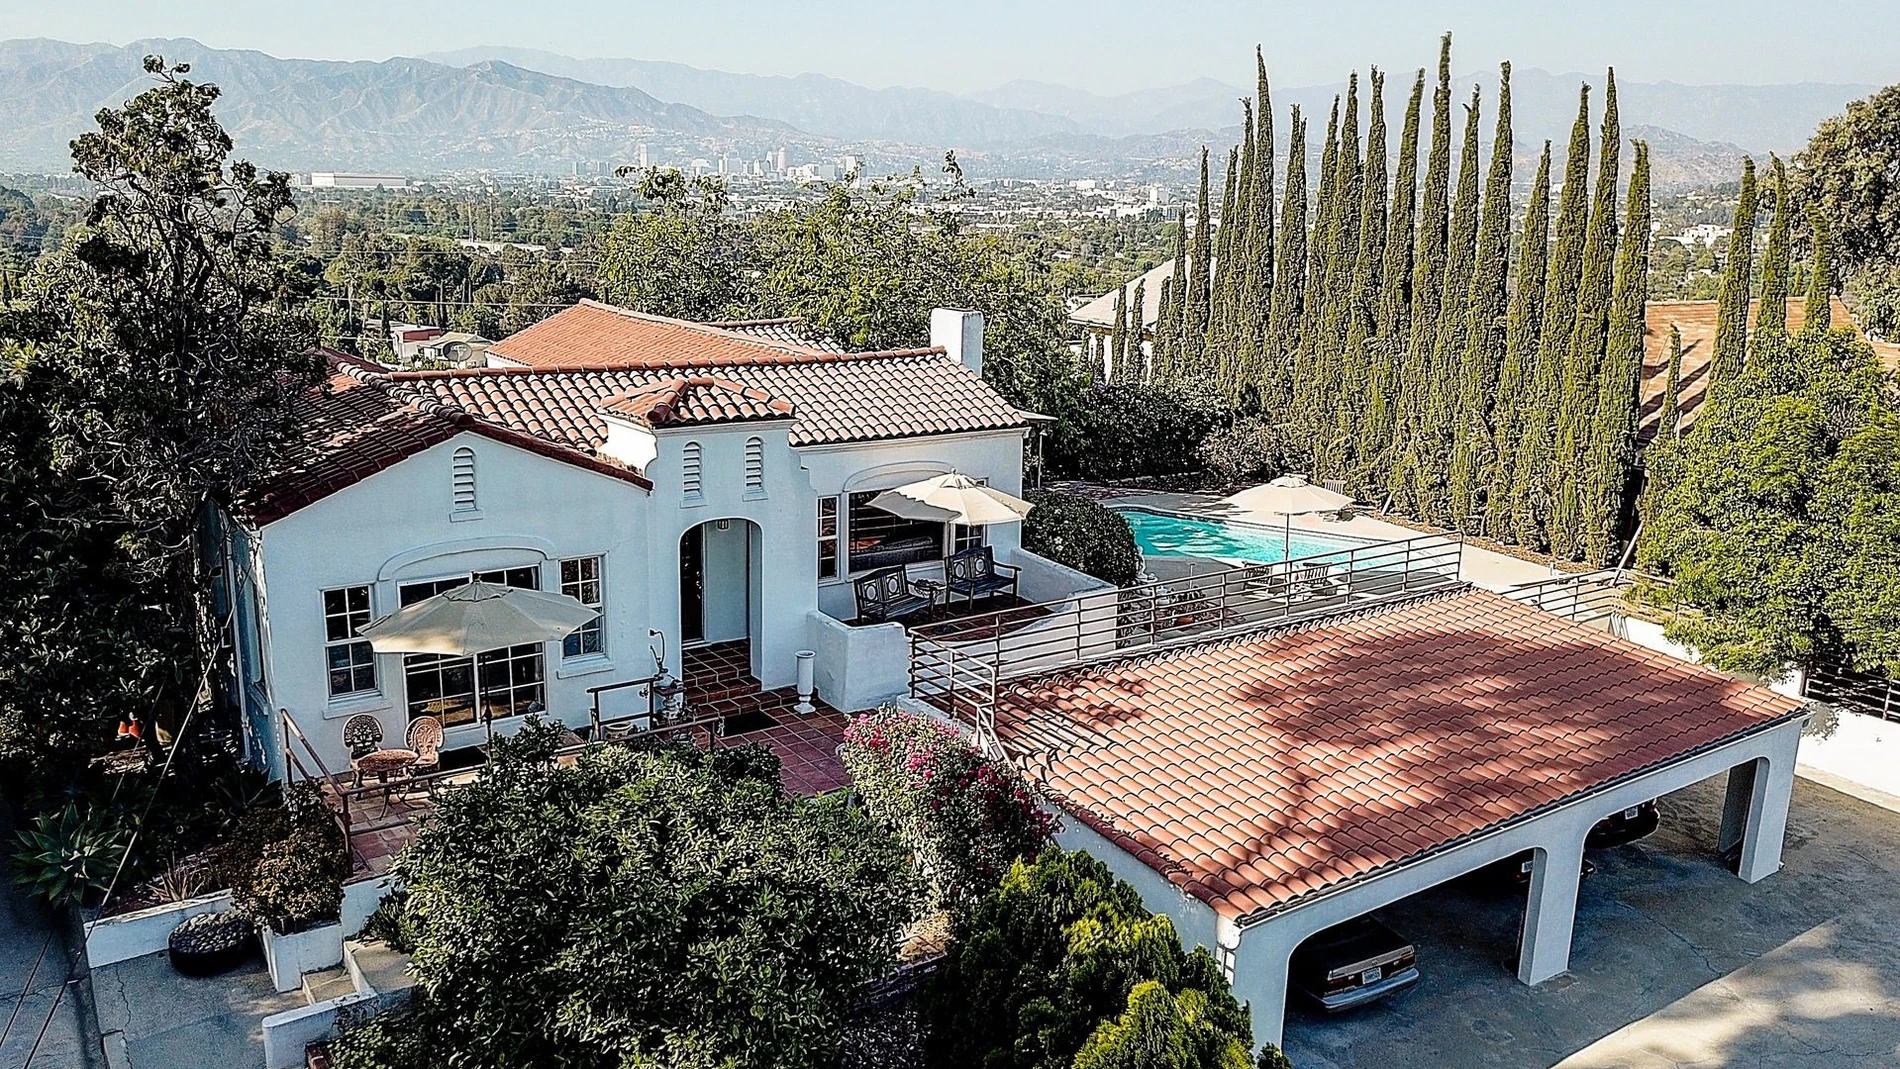 Casa donde la 'Familia Manson' perpetró varios asesinatos